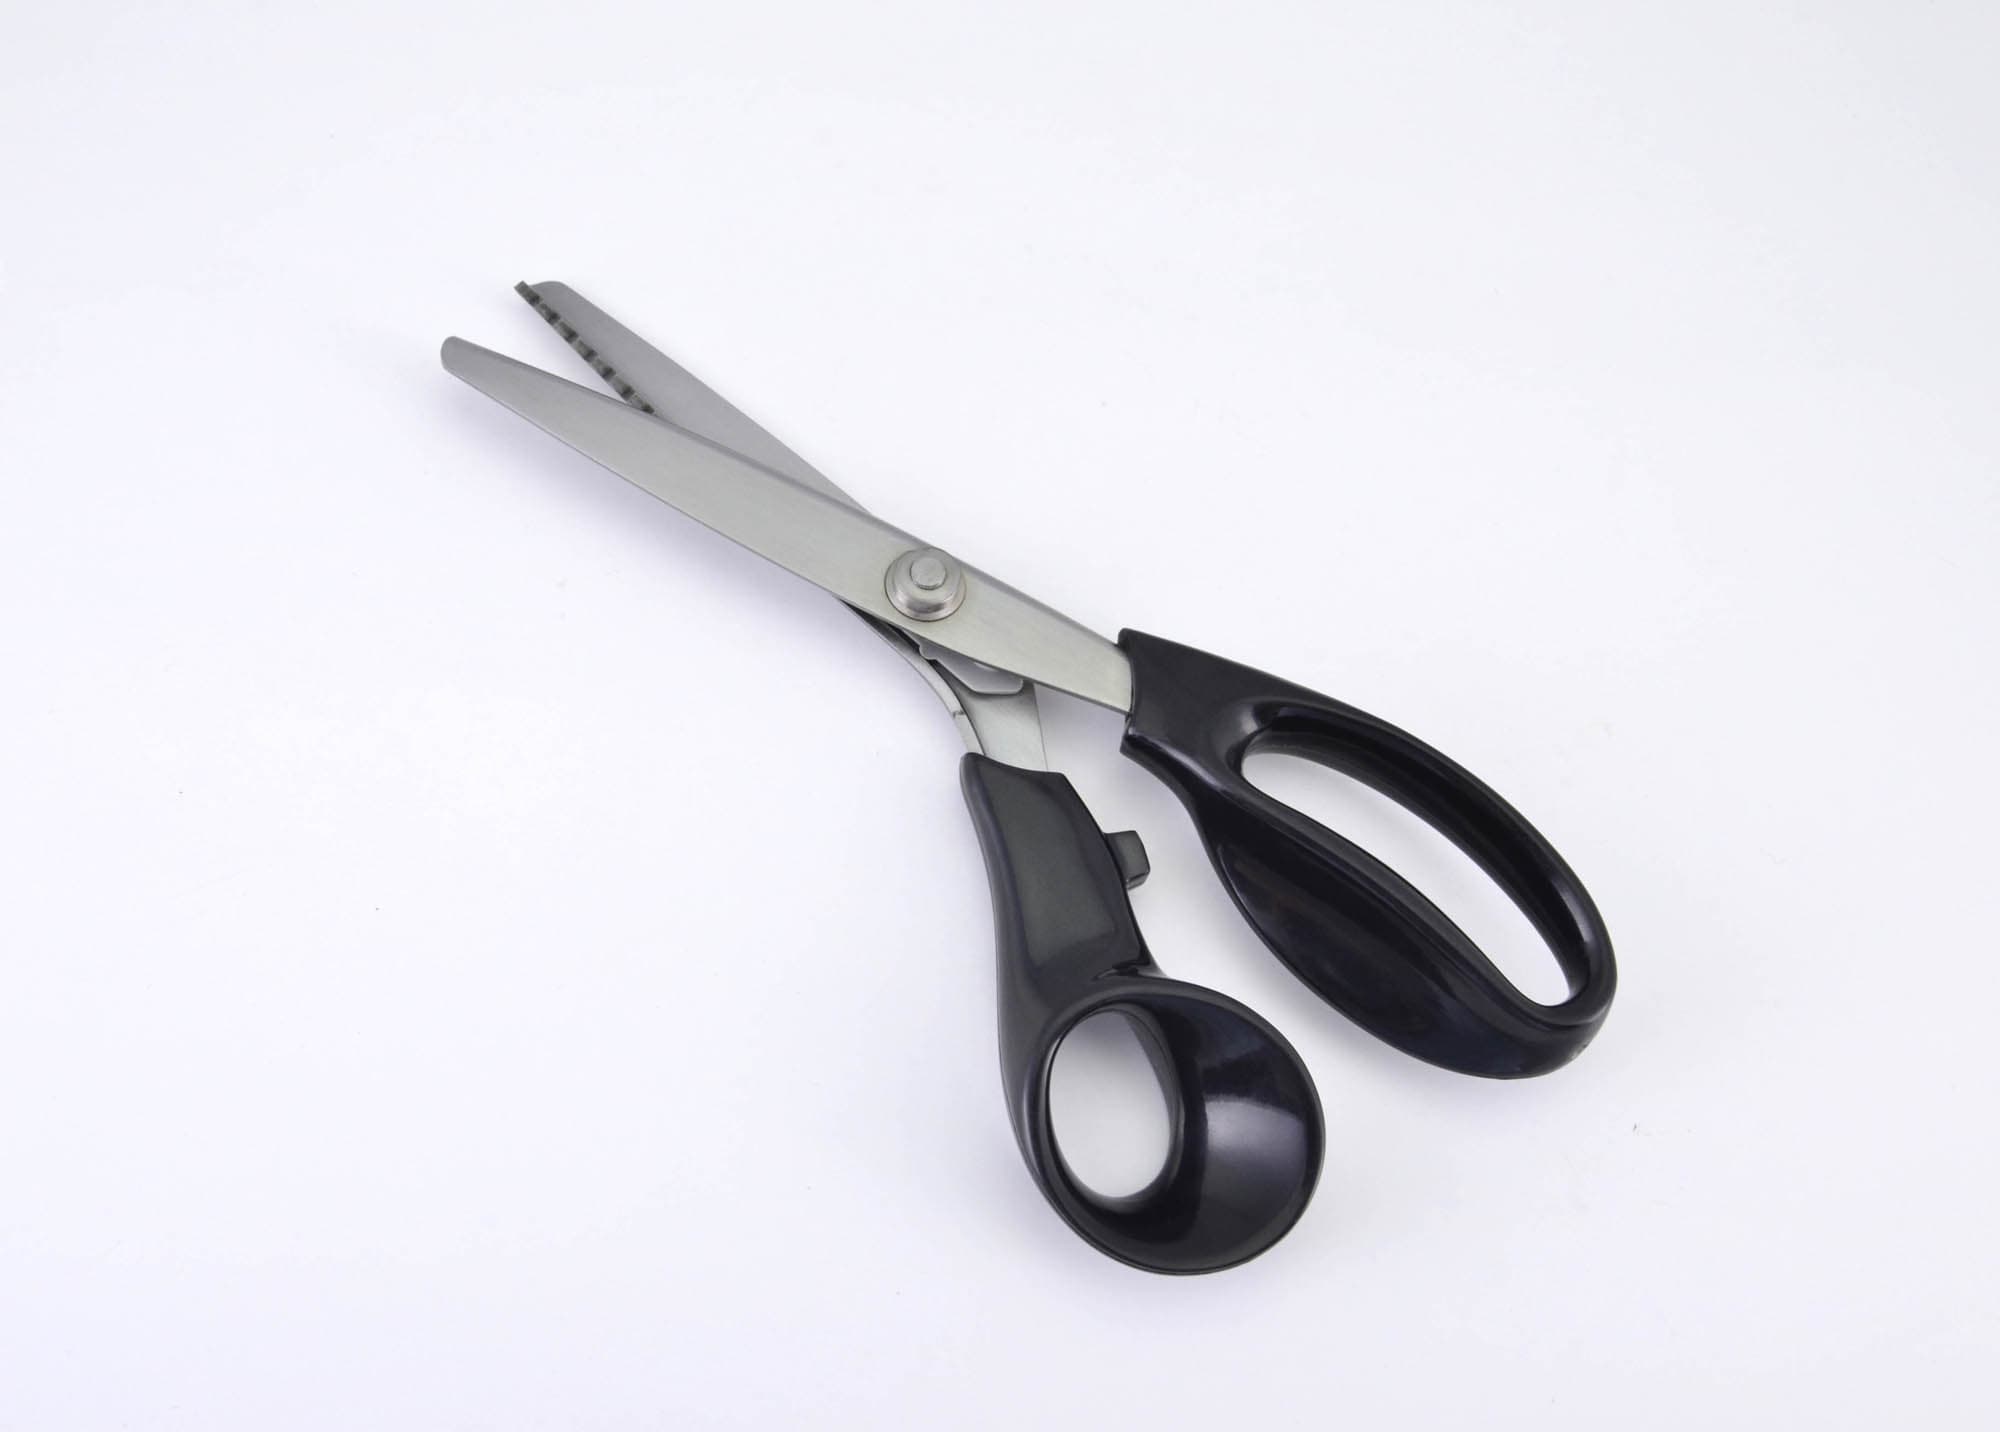 Sewing Scissors_Tailor Scissors_Pinking Scissors